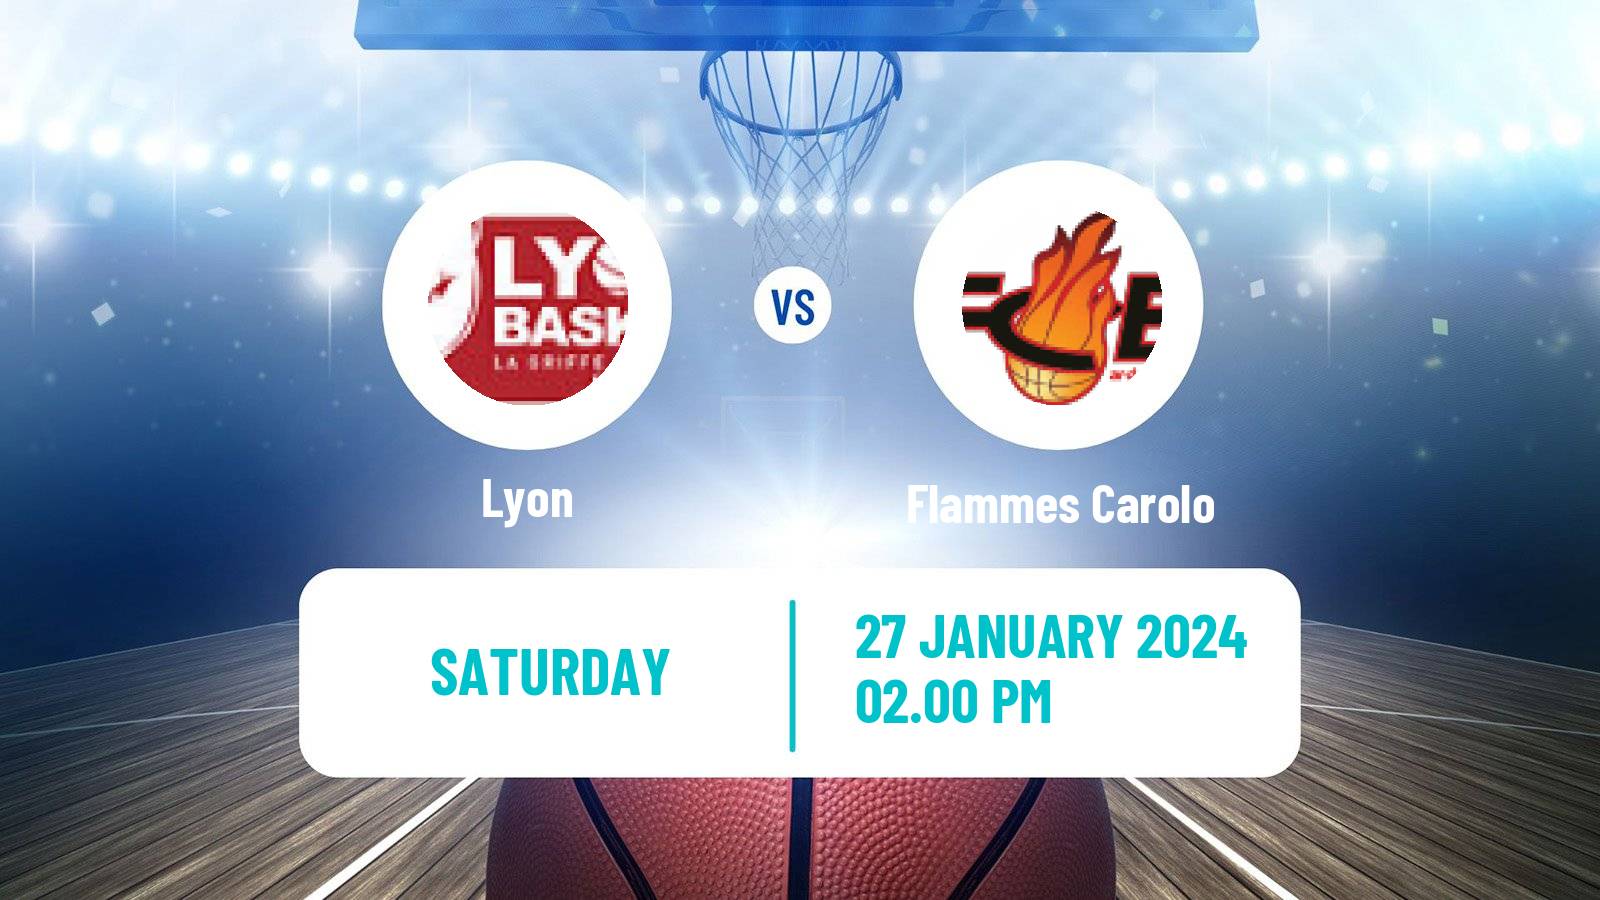 Basketball French LFB Lyon - Flammes Carolo